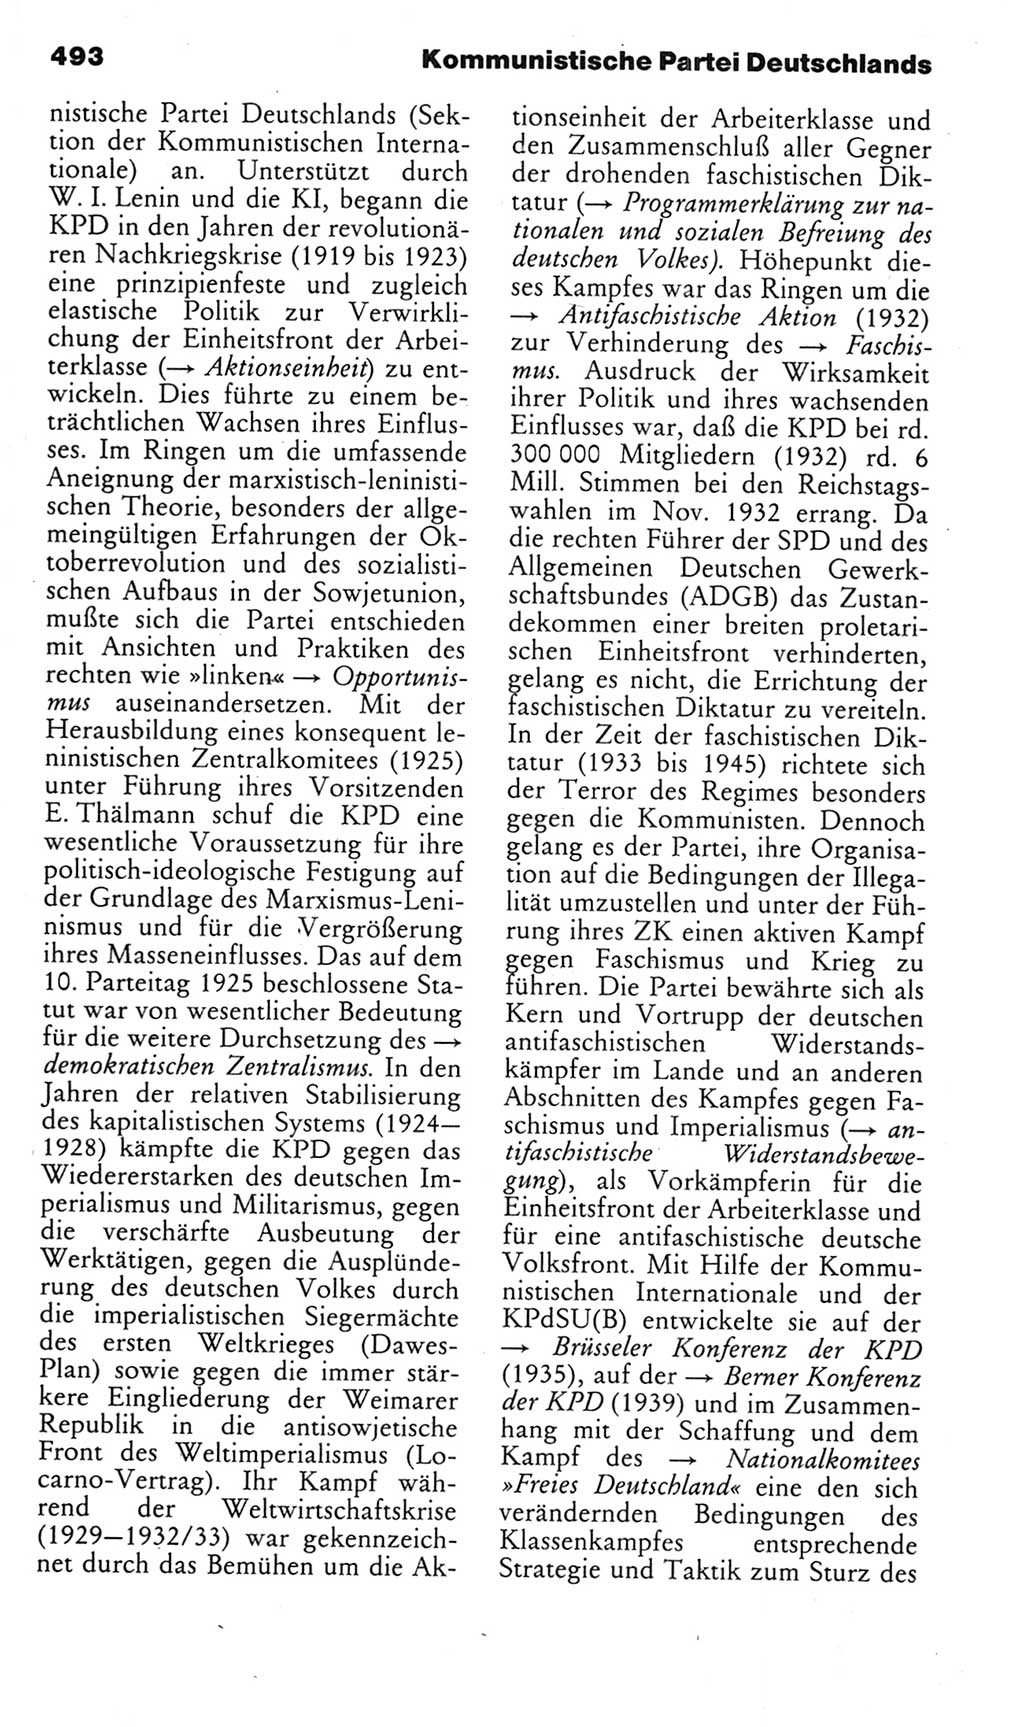 Kleines politisches Wörterbuch [Deutsche Demokratische Republik (DDR)] 1985, Seite 493 (Kl. pol. Wb. DDR 1985, S. 493)